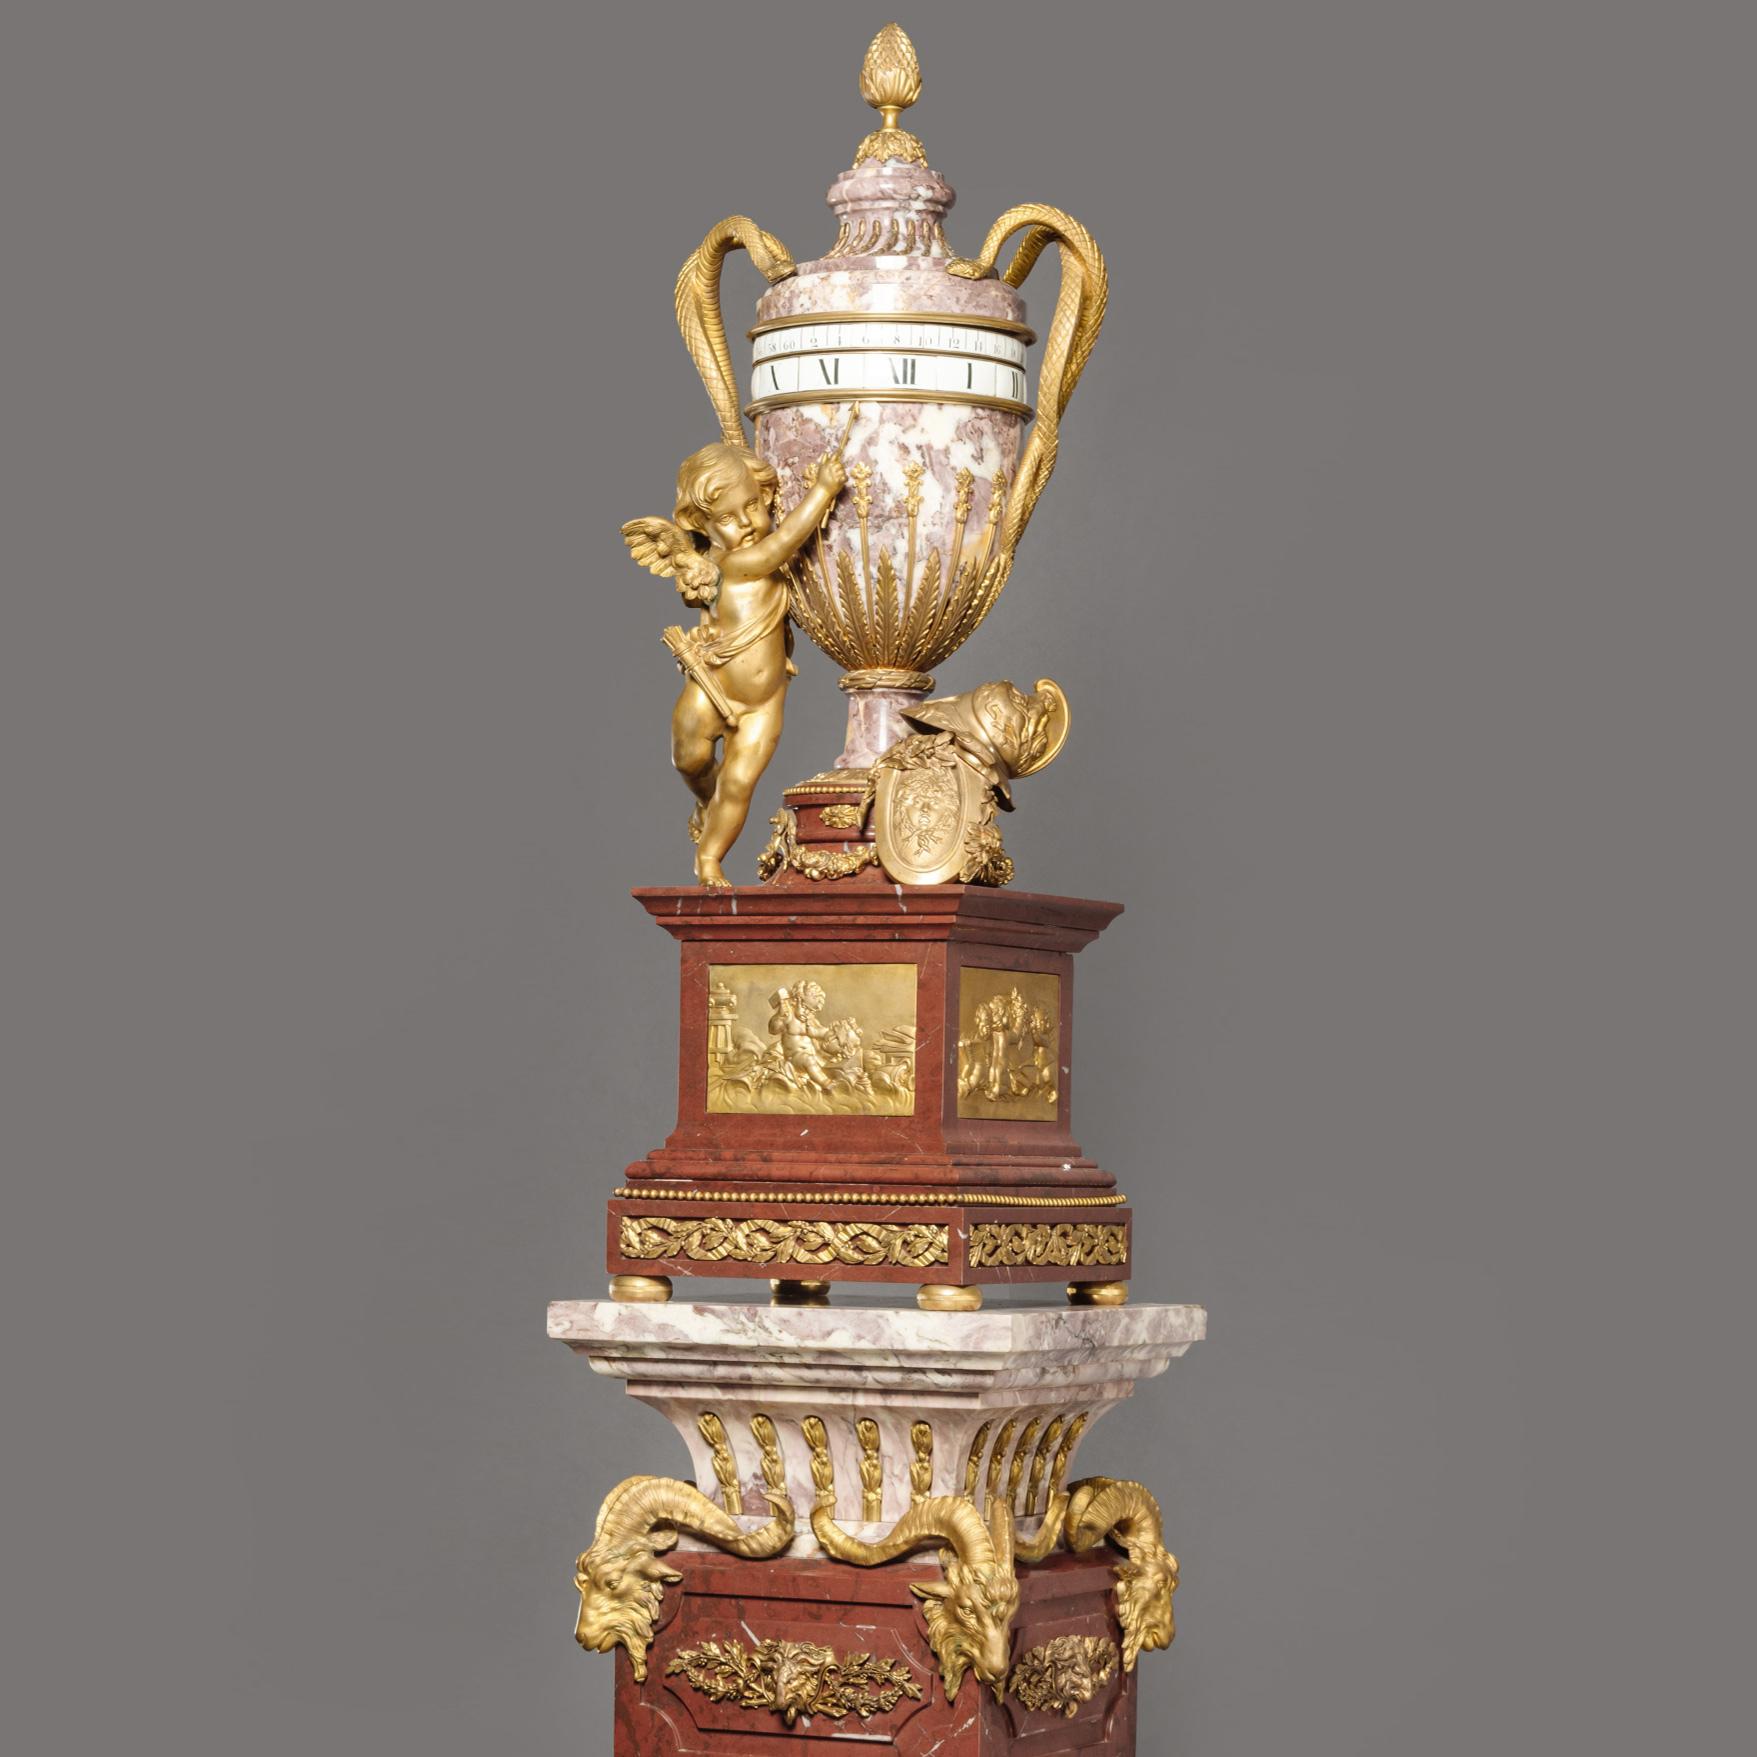 Eine seltene Sockeluhr im Louis XVI-Stil mit vergoldeter Bronze und ringförmigem Zifferblatt aus Marmor in der Art von Jean-André und Jean-Baptiste Lepaute, zugeschrieben von Dufaud, Paris.

Das zweizügige Acht-Tage-Werk mit kreisförmigen Platinen